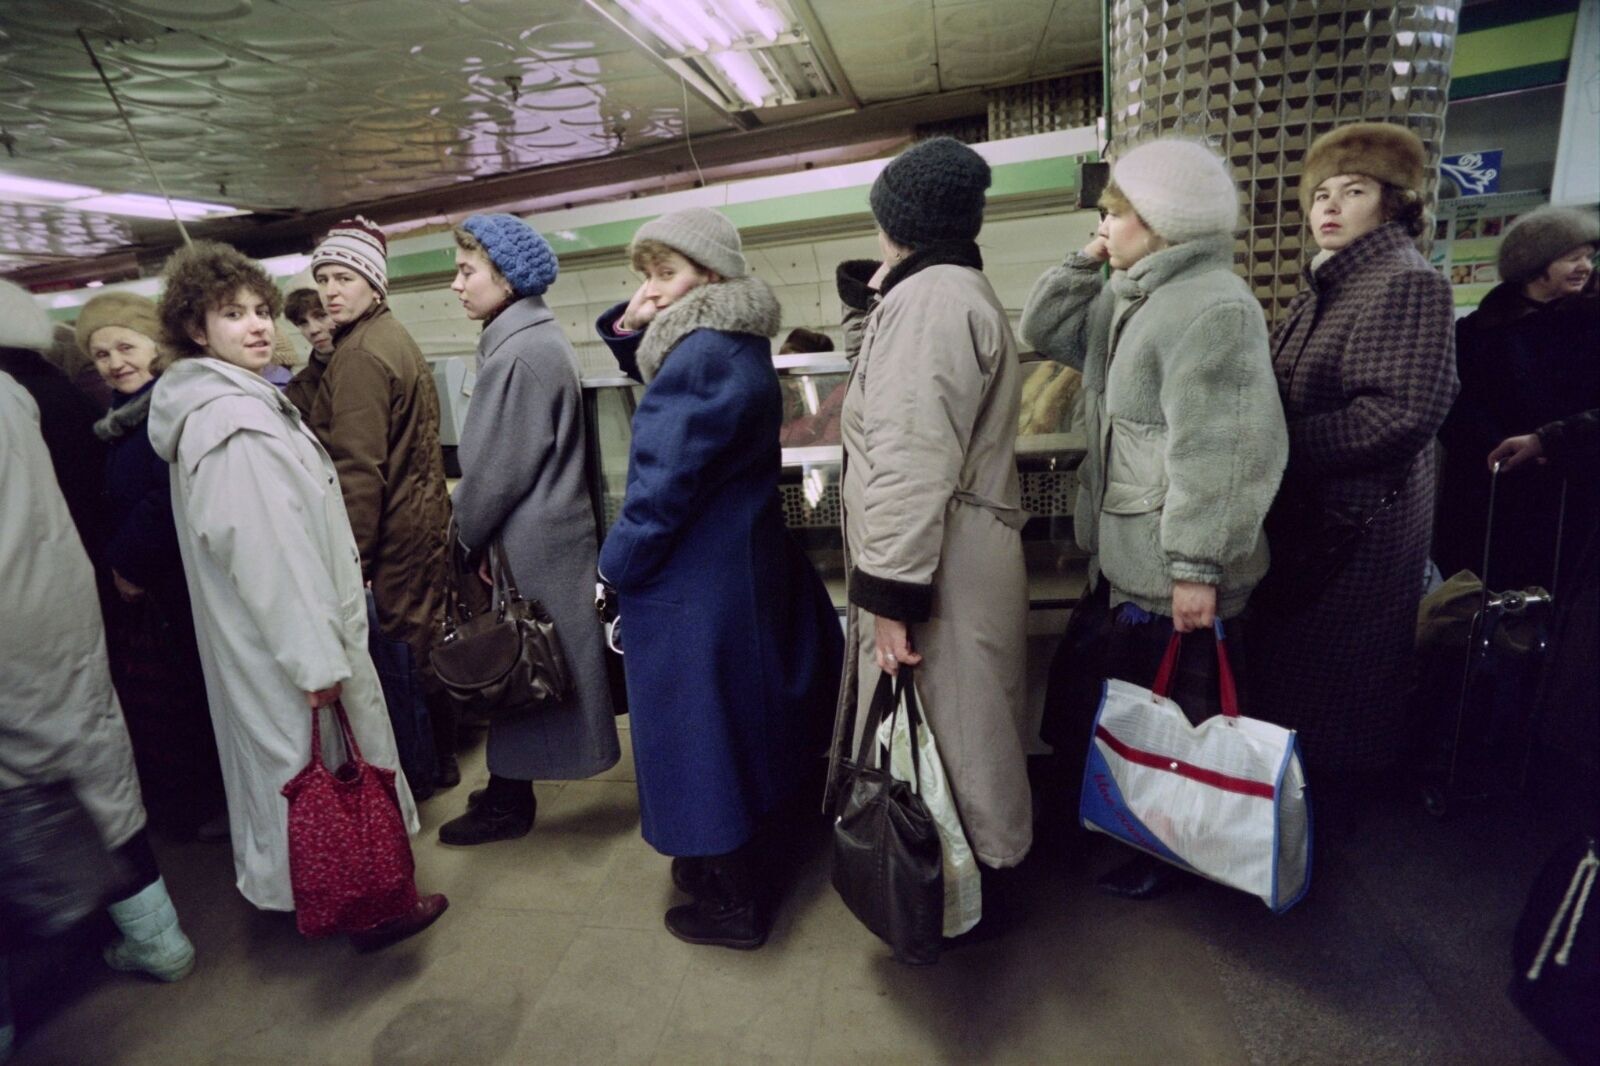 Їжте, не вдавіться: як насправді виглядали прилавки магазинів в останні роки життя СРСР 